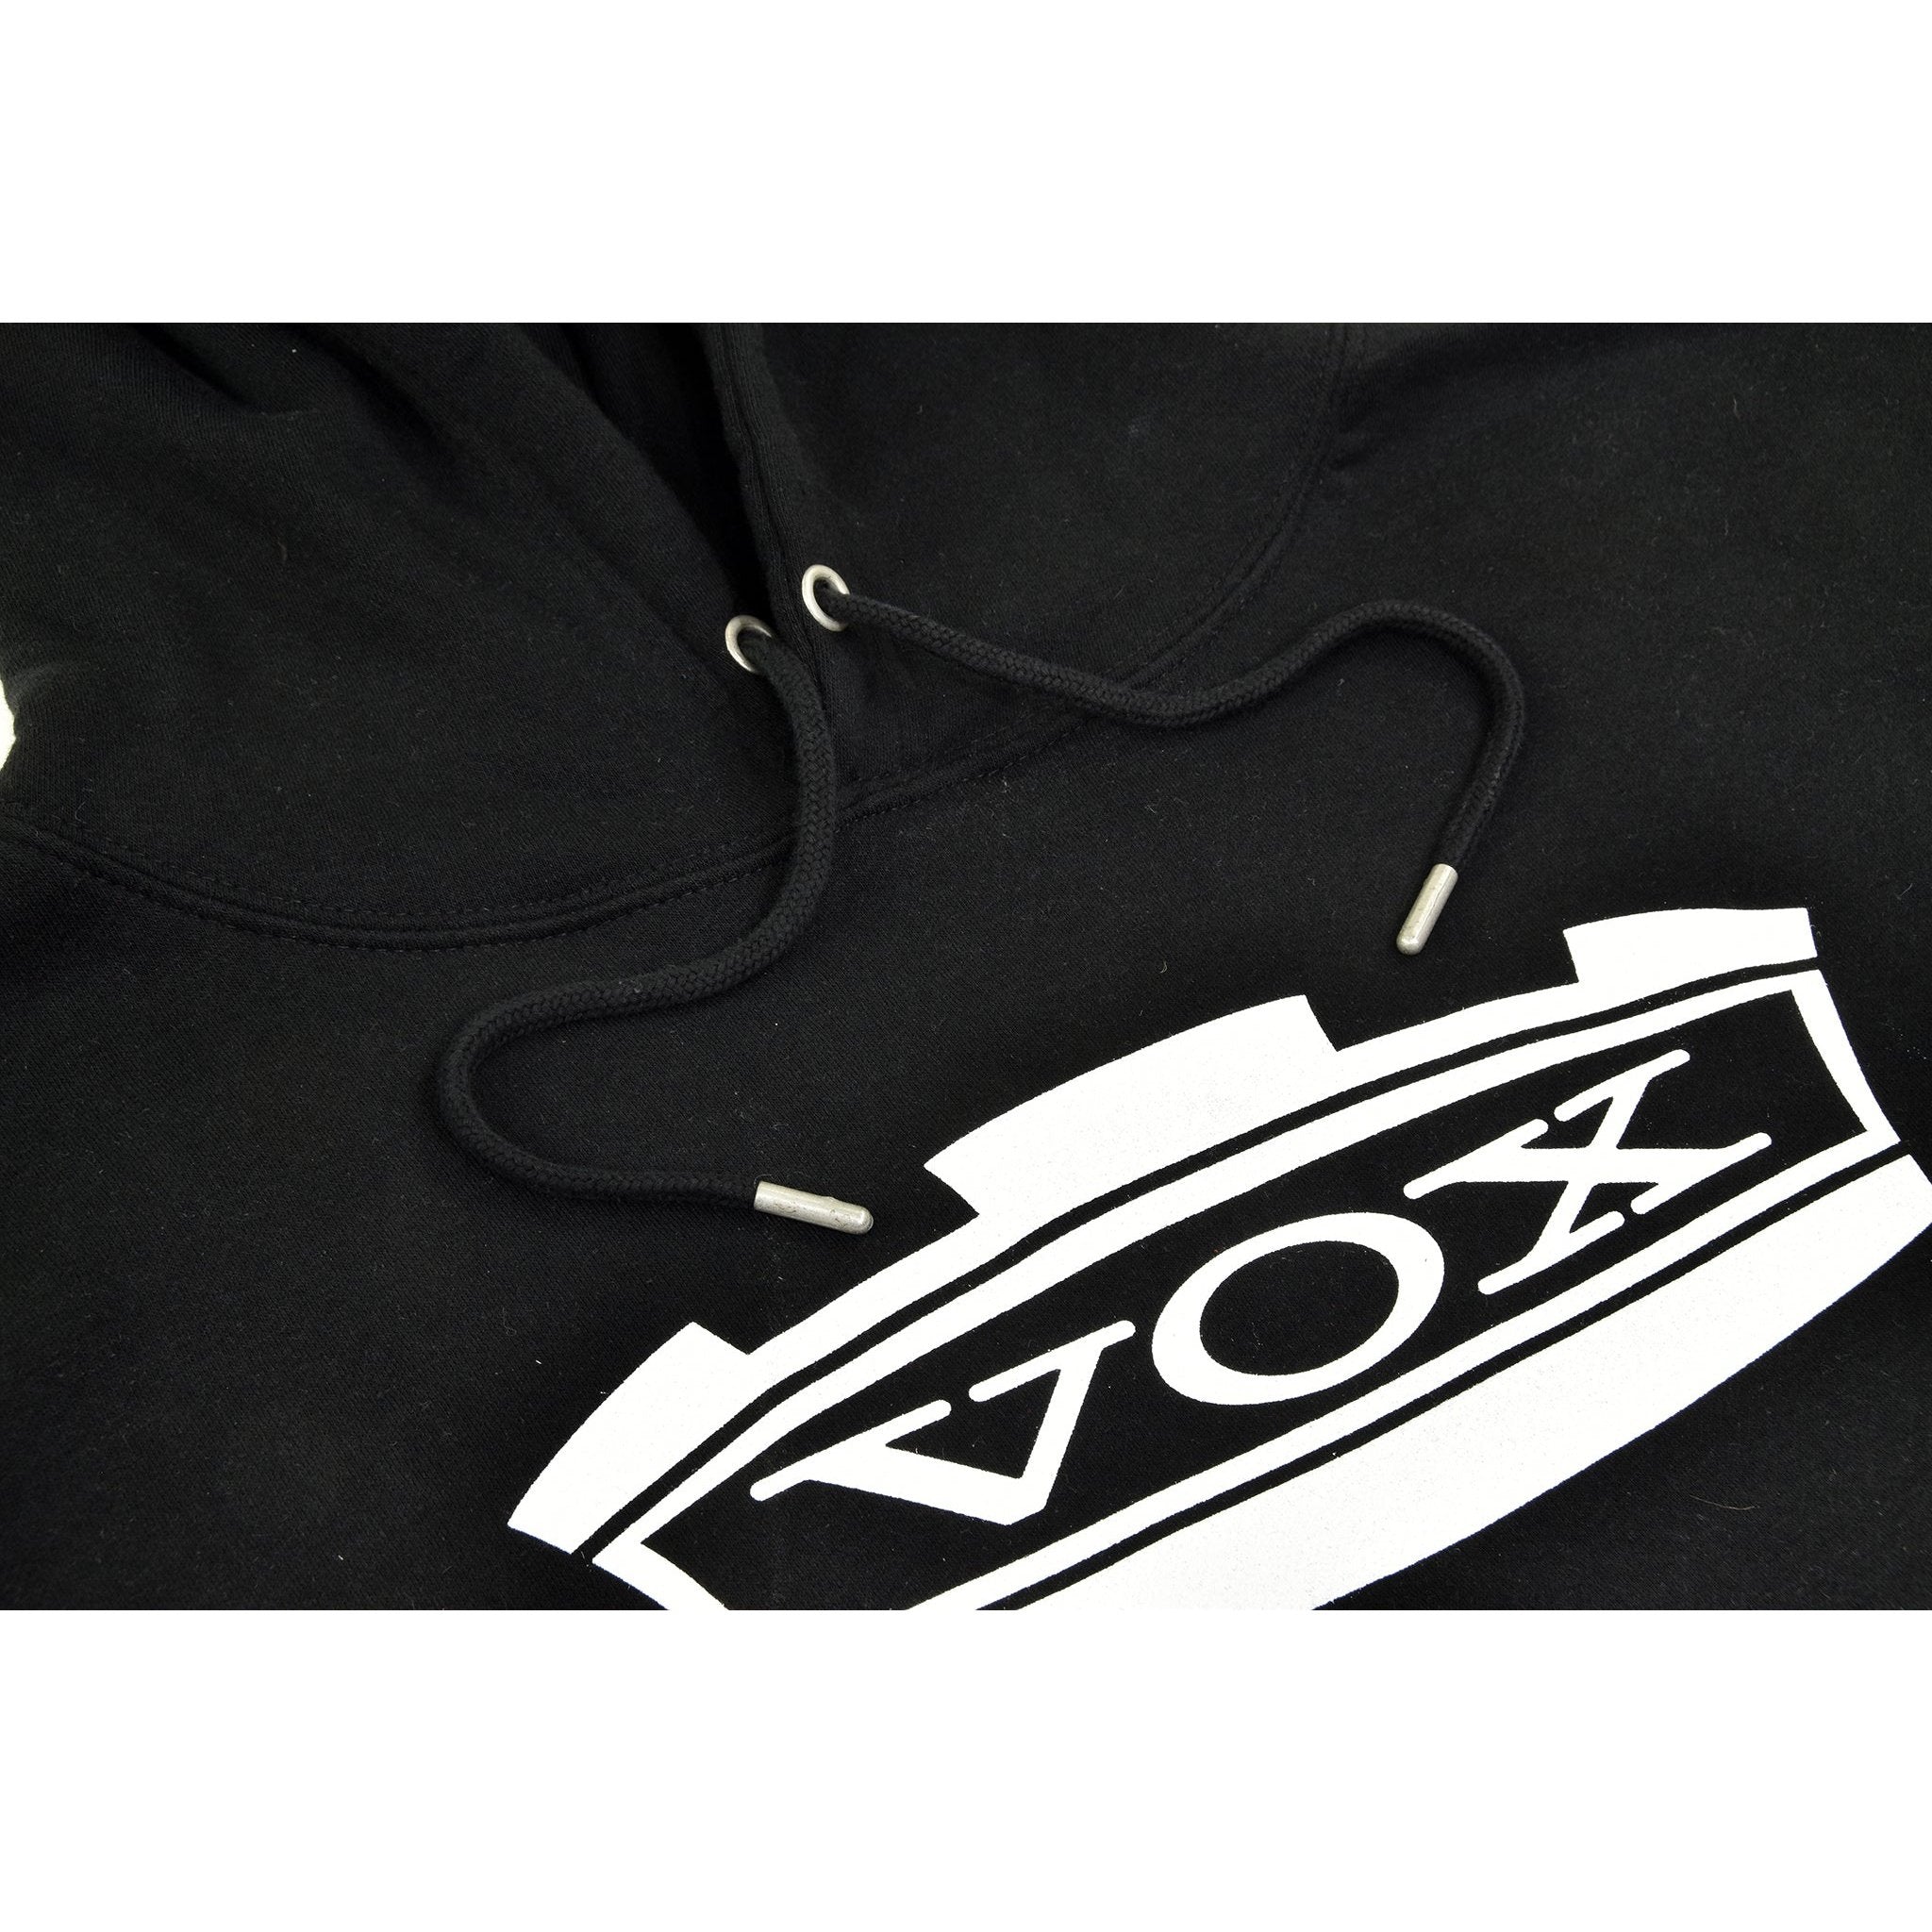 Vox Logo Hoodie 2